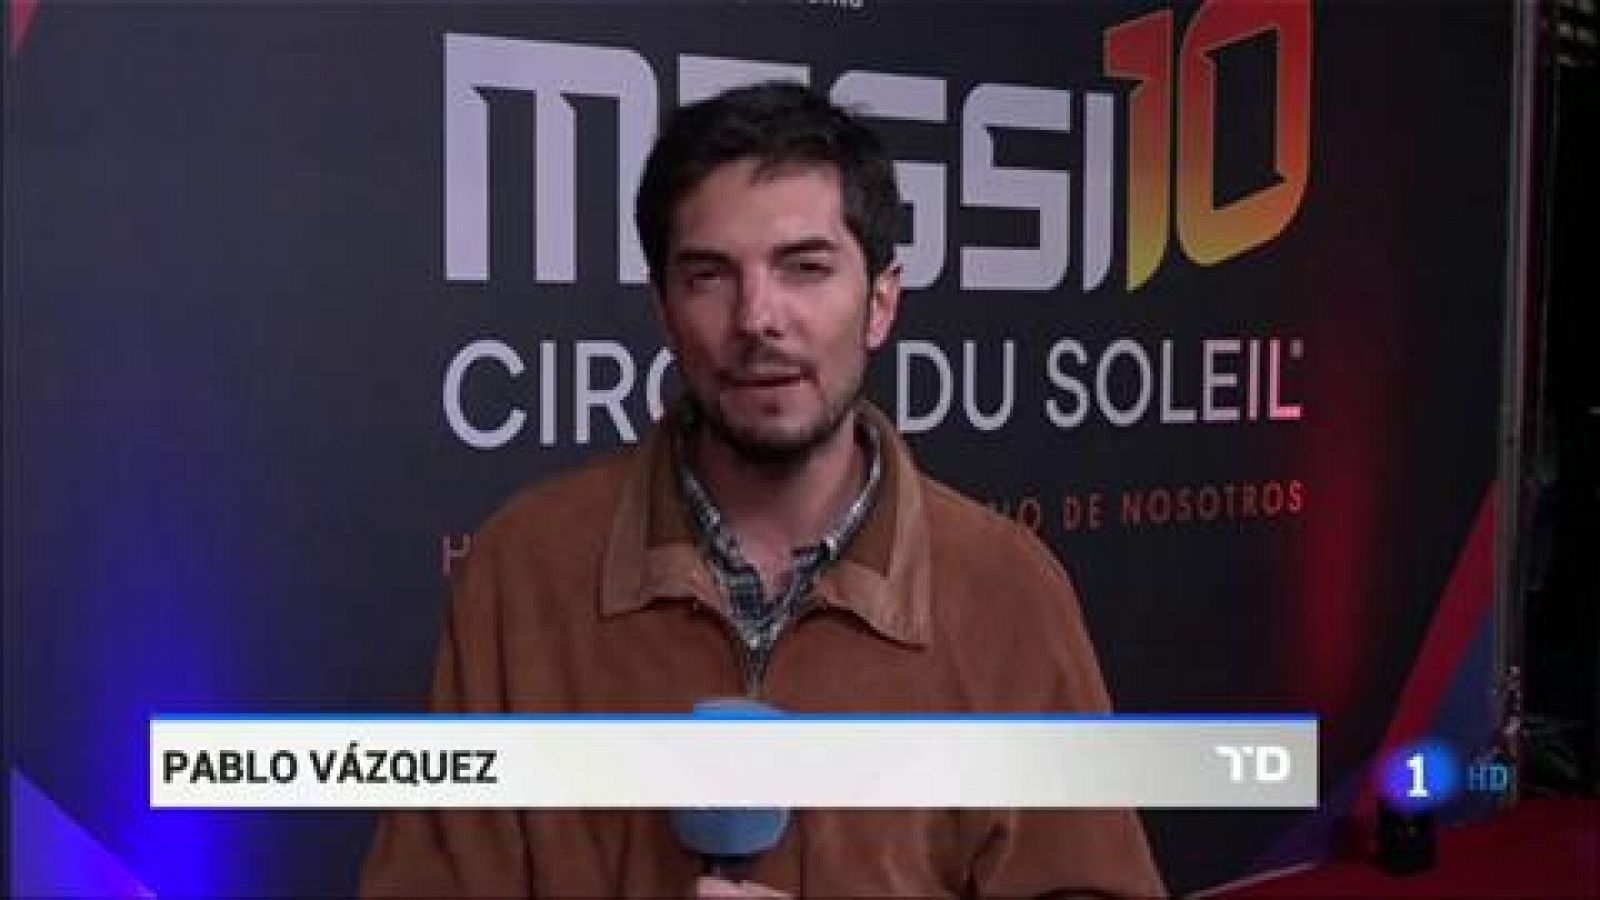 La magia de Messi llega al Circo del Sol - RTVE.es